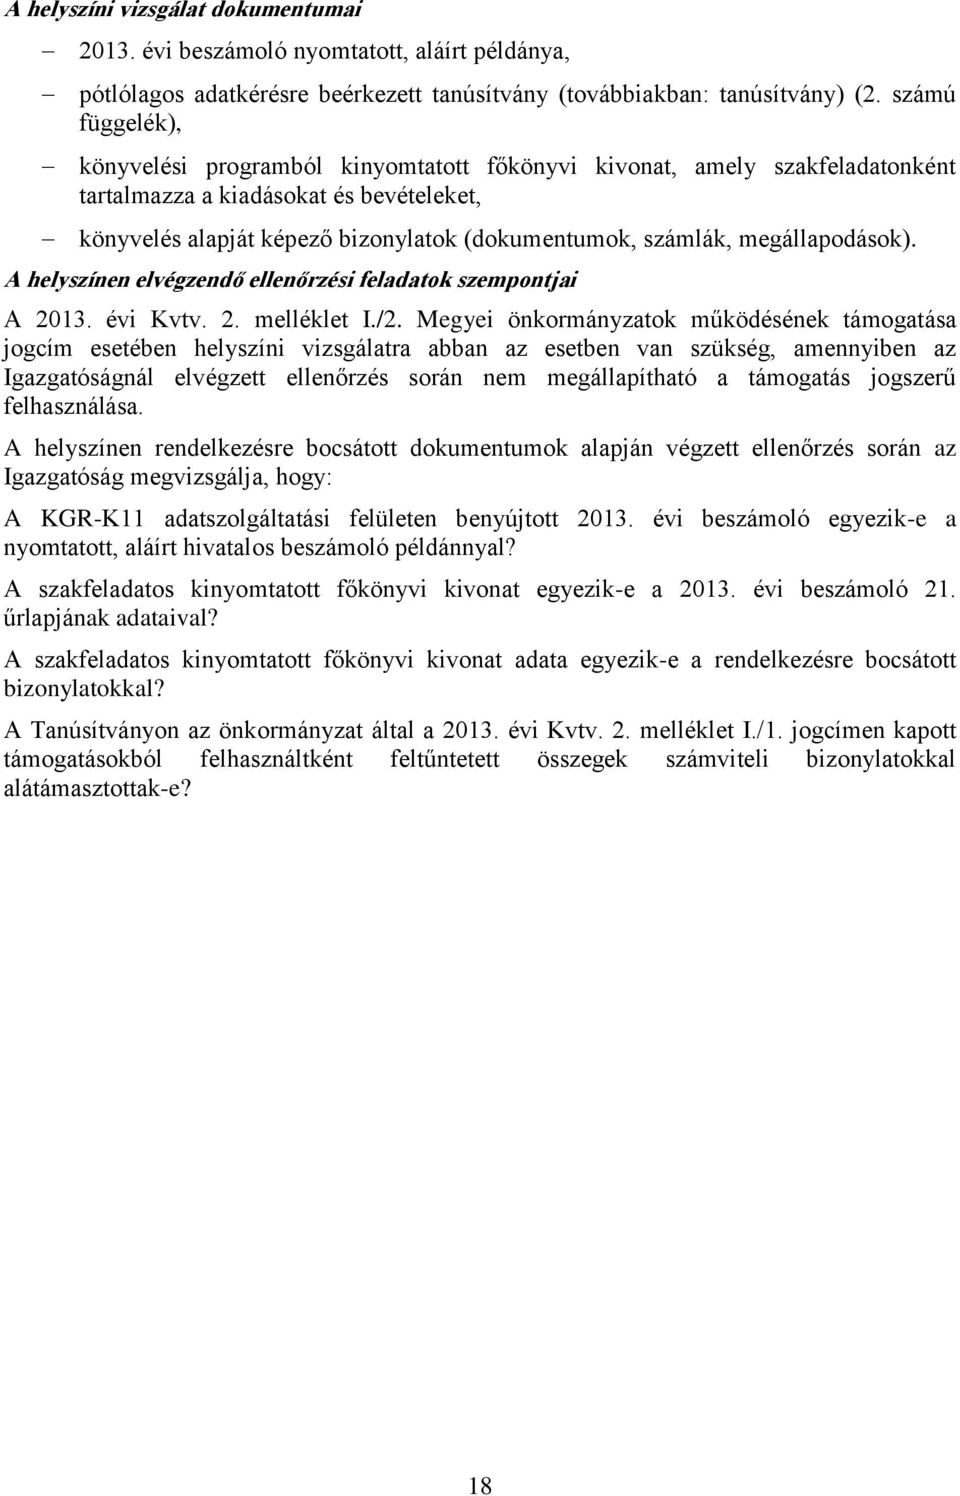 megállapodások). A helyszínen elvégzendő ellenőrzési feladatok szempontjai A 2013. évi Kvtv. 2. melléklet I./2.